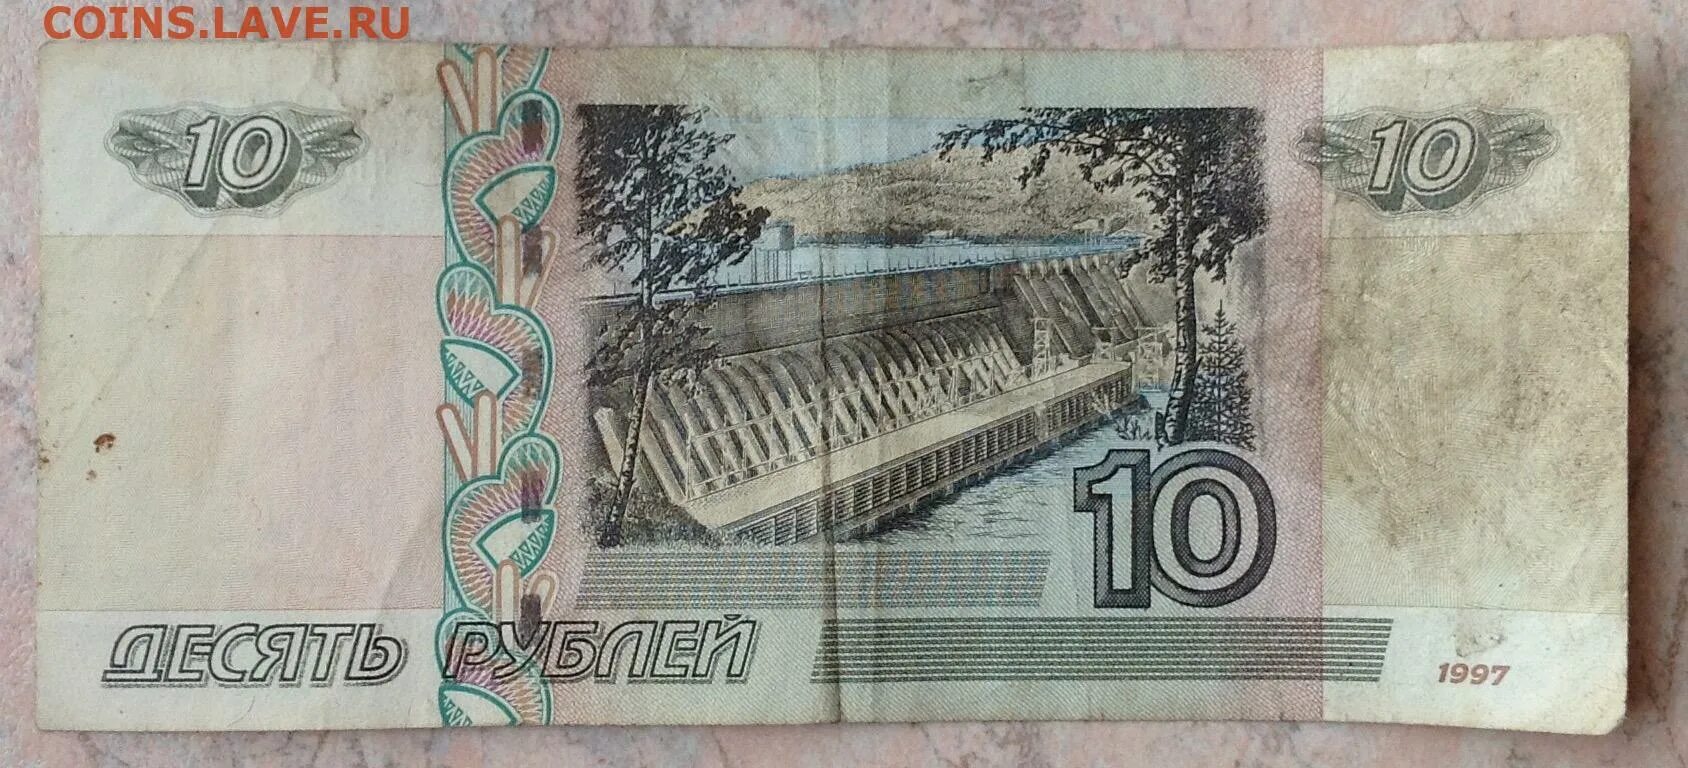 10 Рублей ЦЦ фф. 100 Руб 2004 смещение. Доллары в рубли 2004